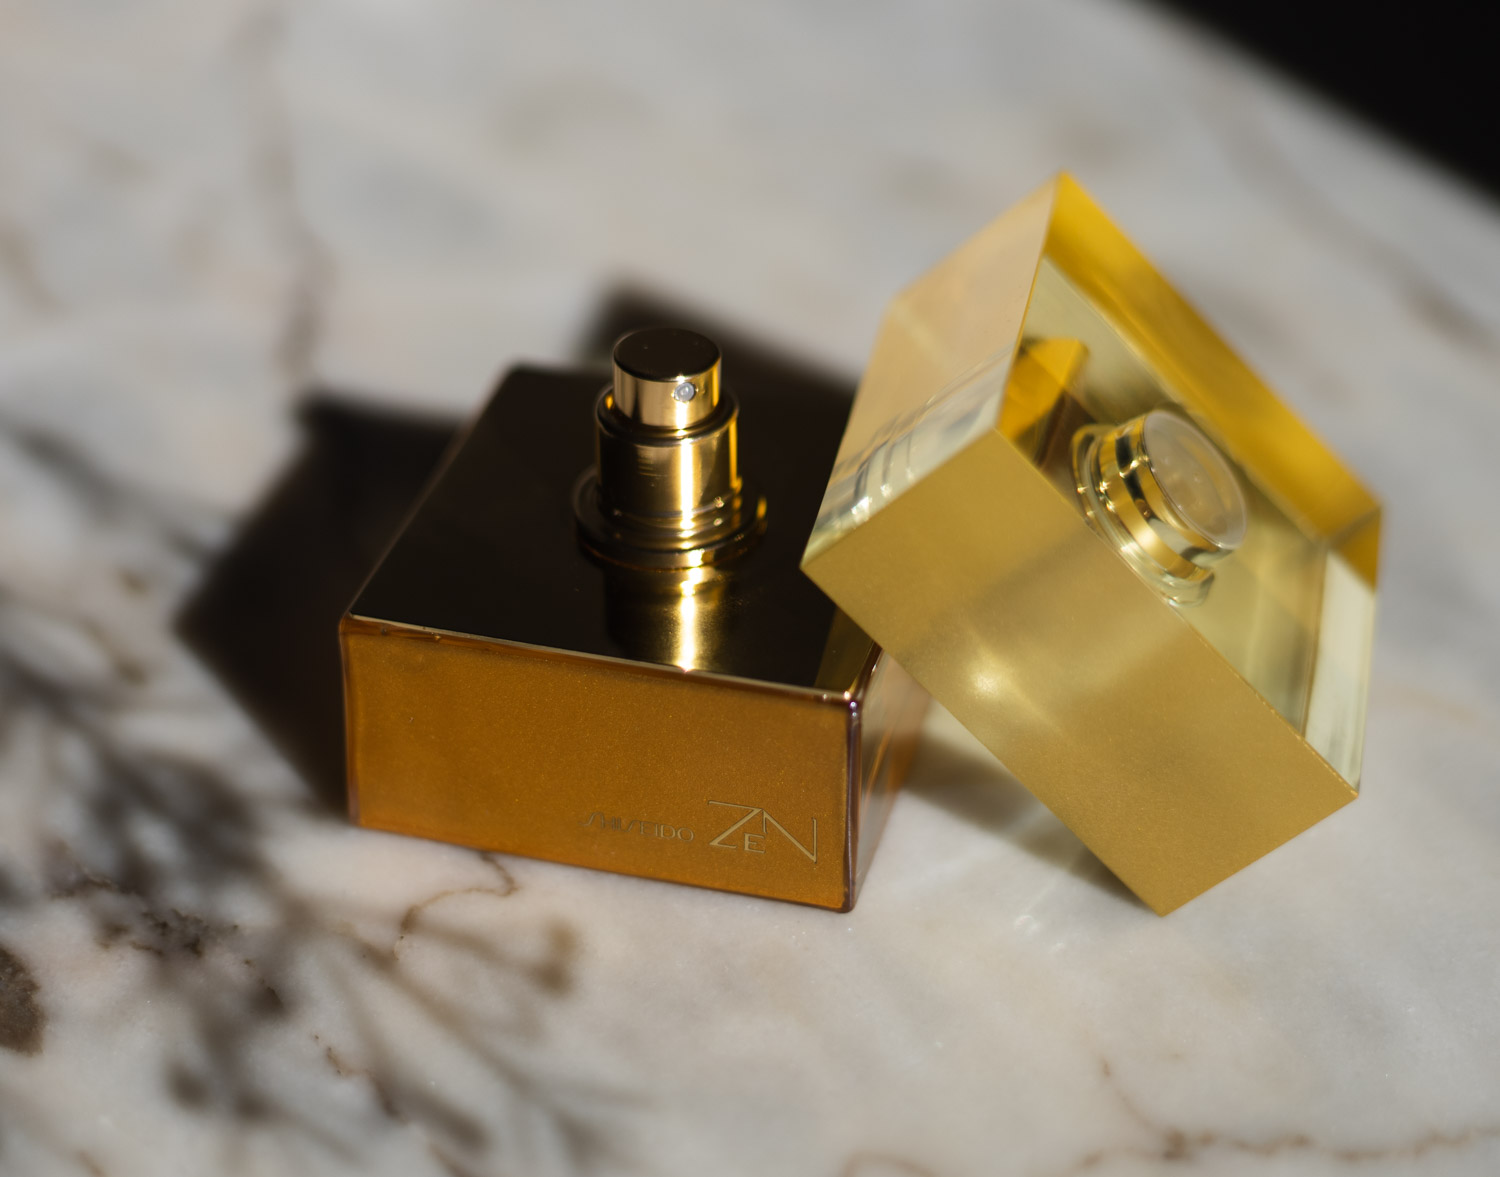 Review Shiseido Zen Eau de Parfum